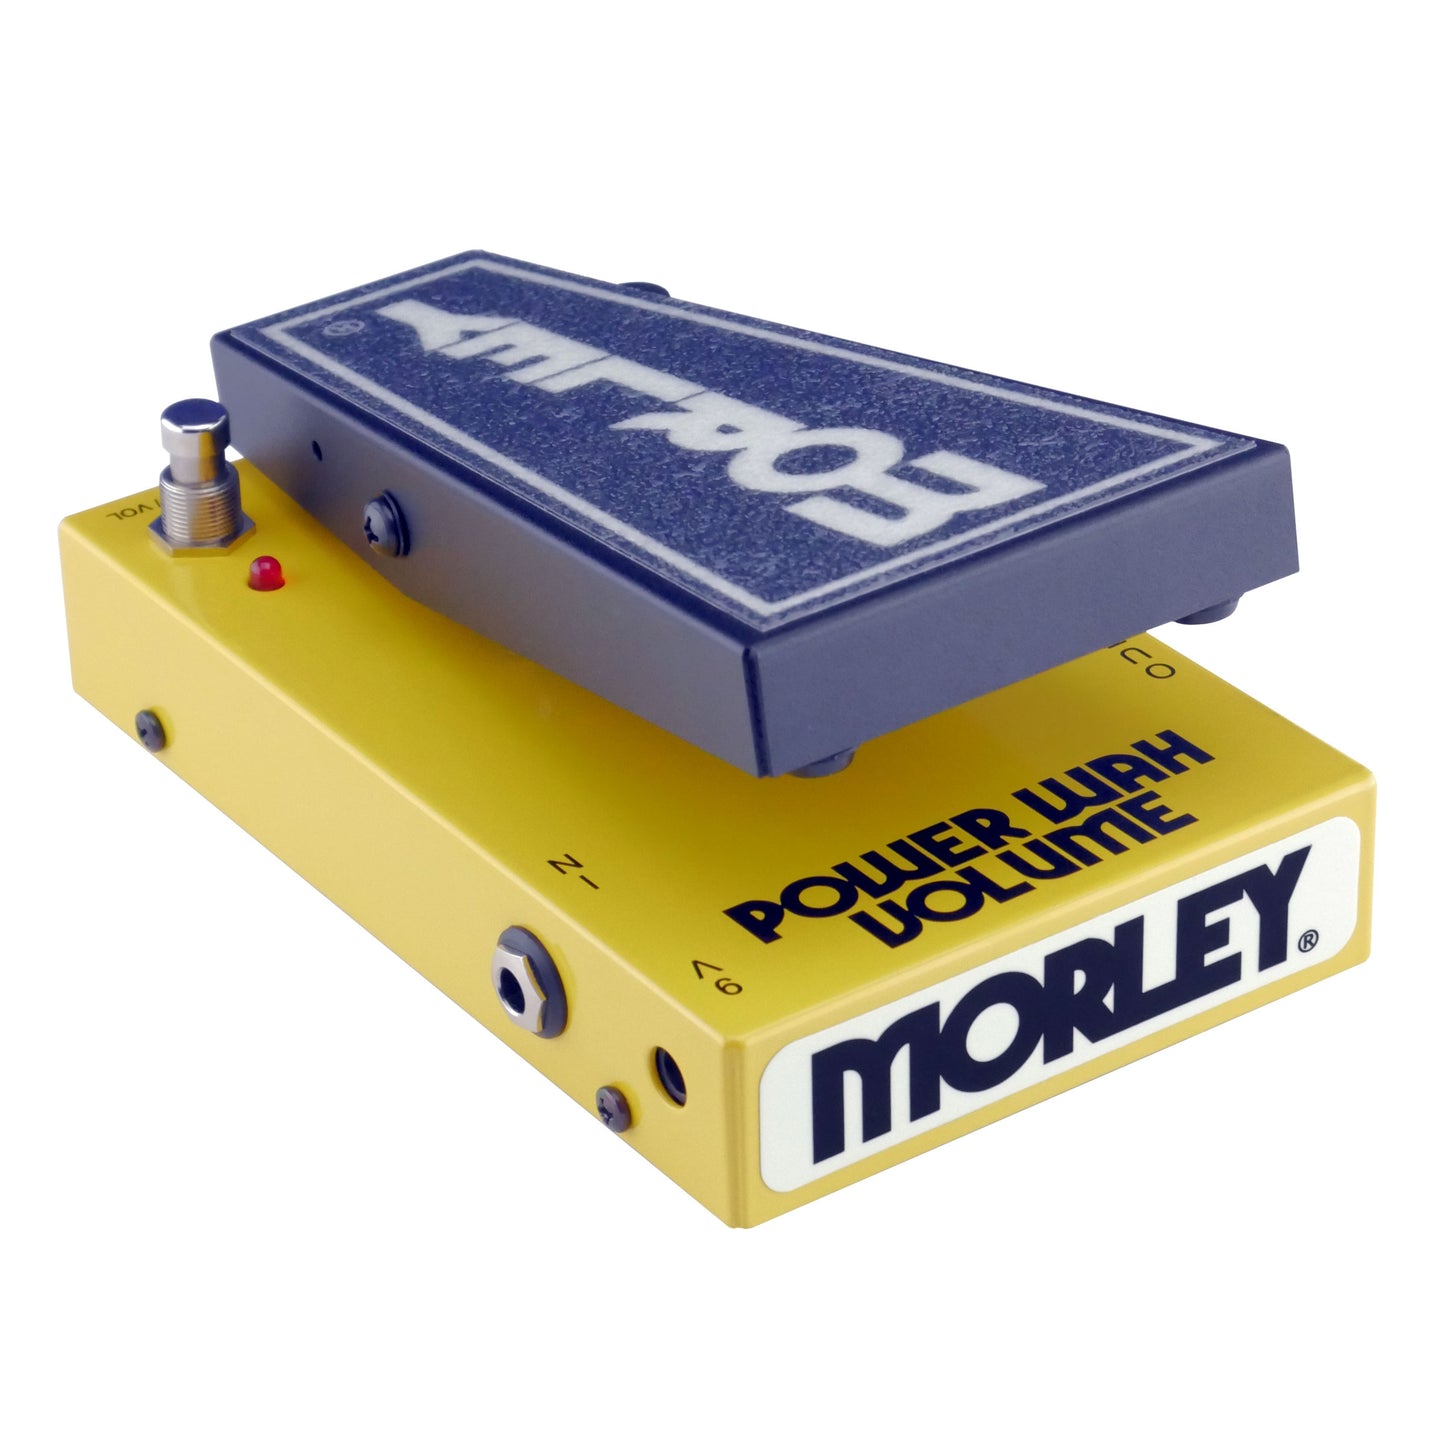 Morley 20/20 Power Wah Volume Pedal